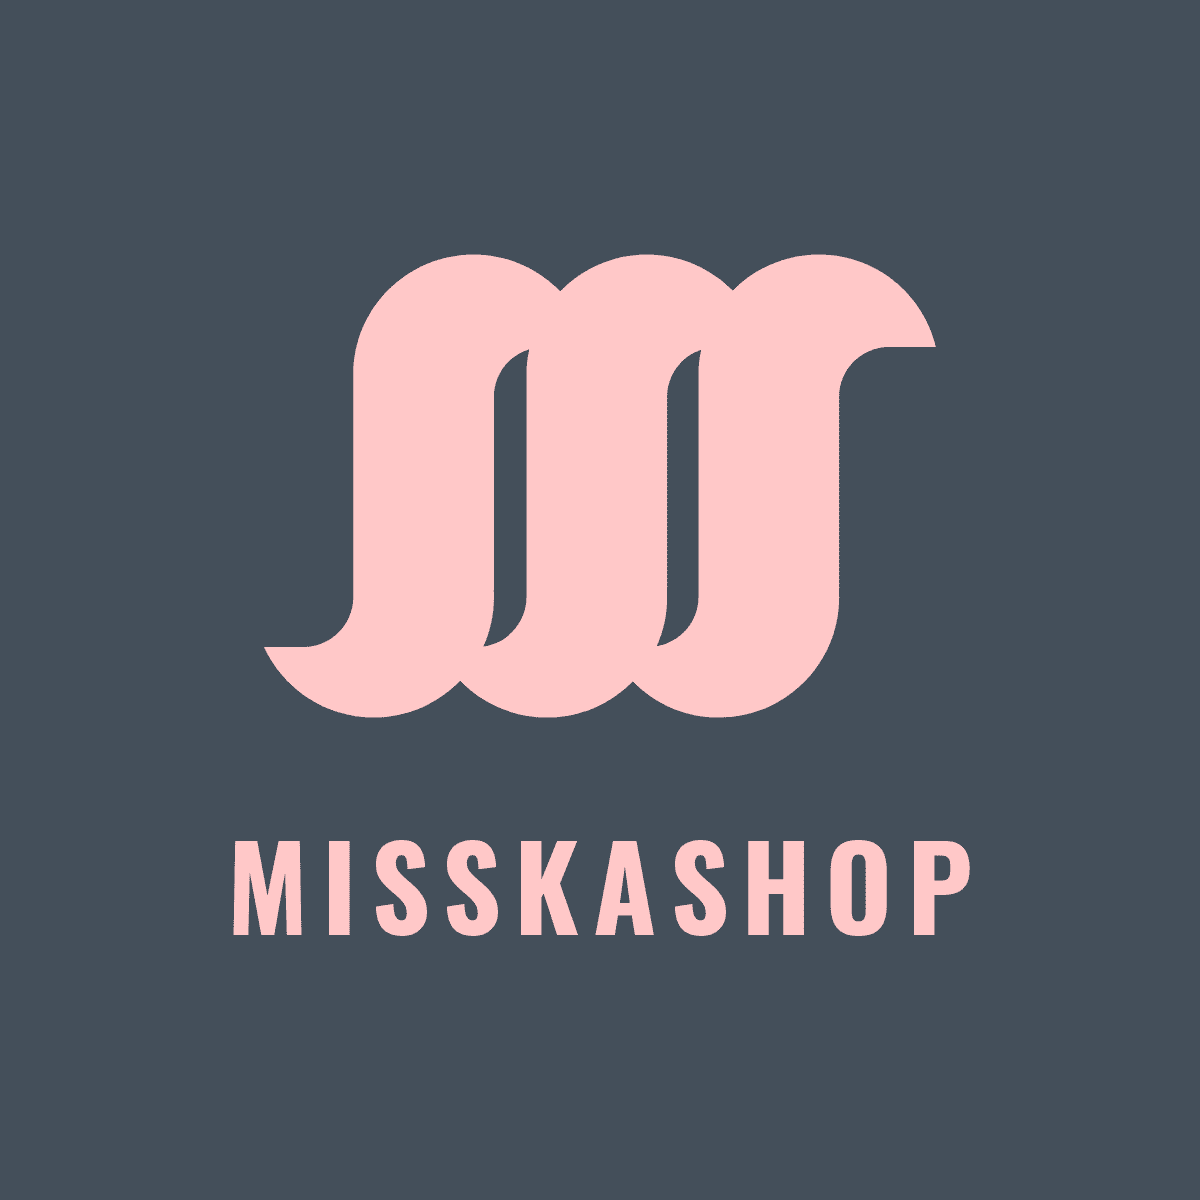 Misskashop